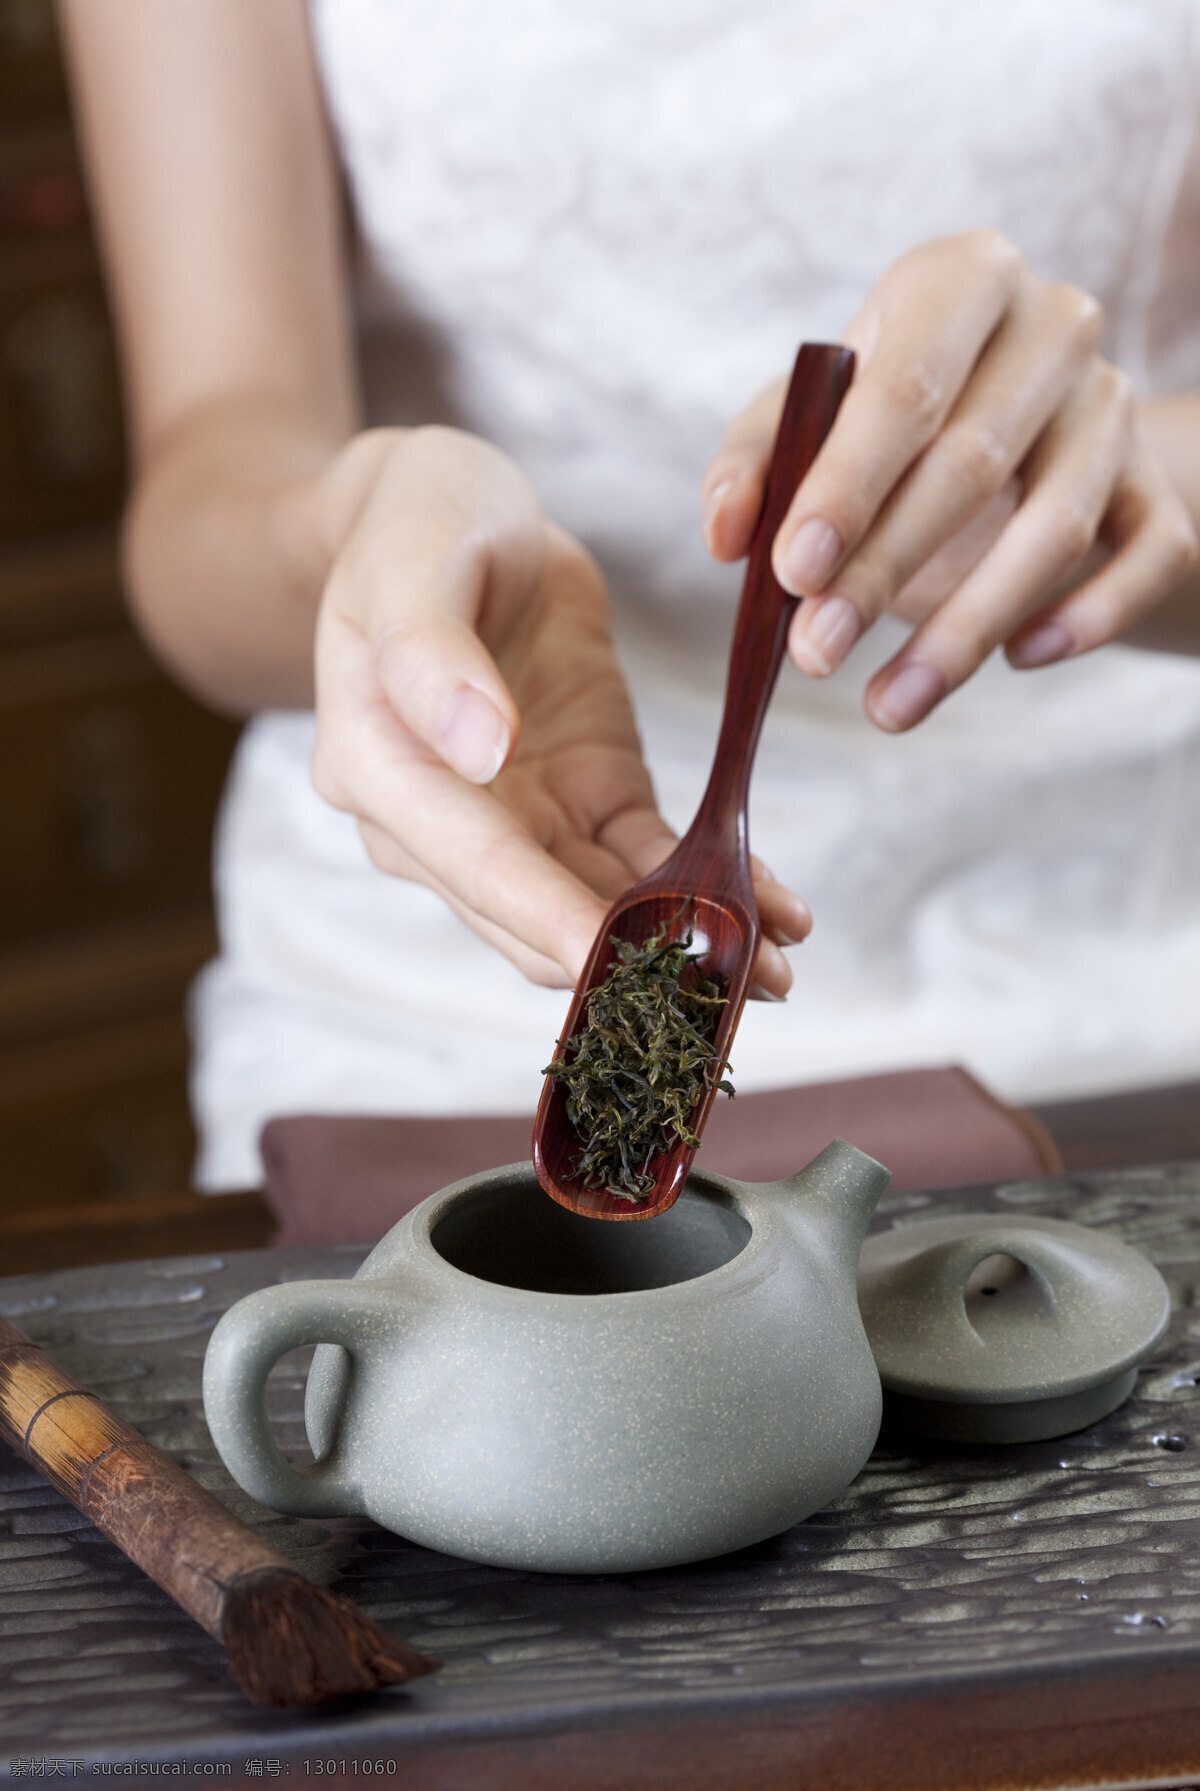 泡茶 茶 功夫茶 茶杯 泡茶工具 茶壶 倒茶 冲茶 茶具 传统文化 文化艺术